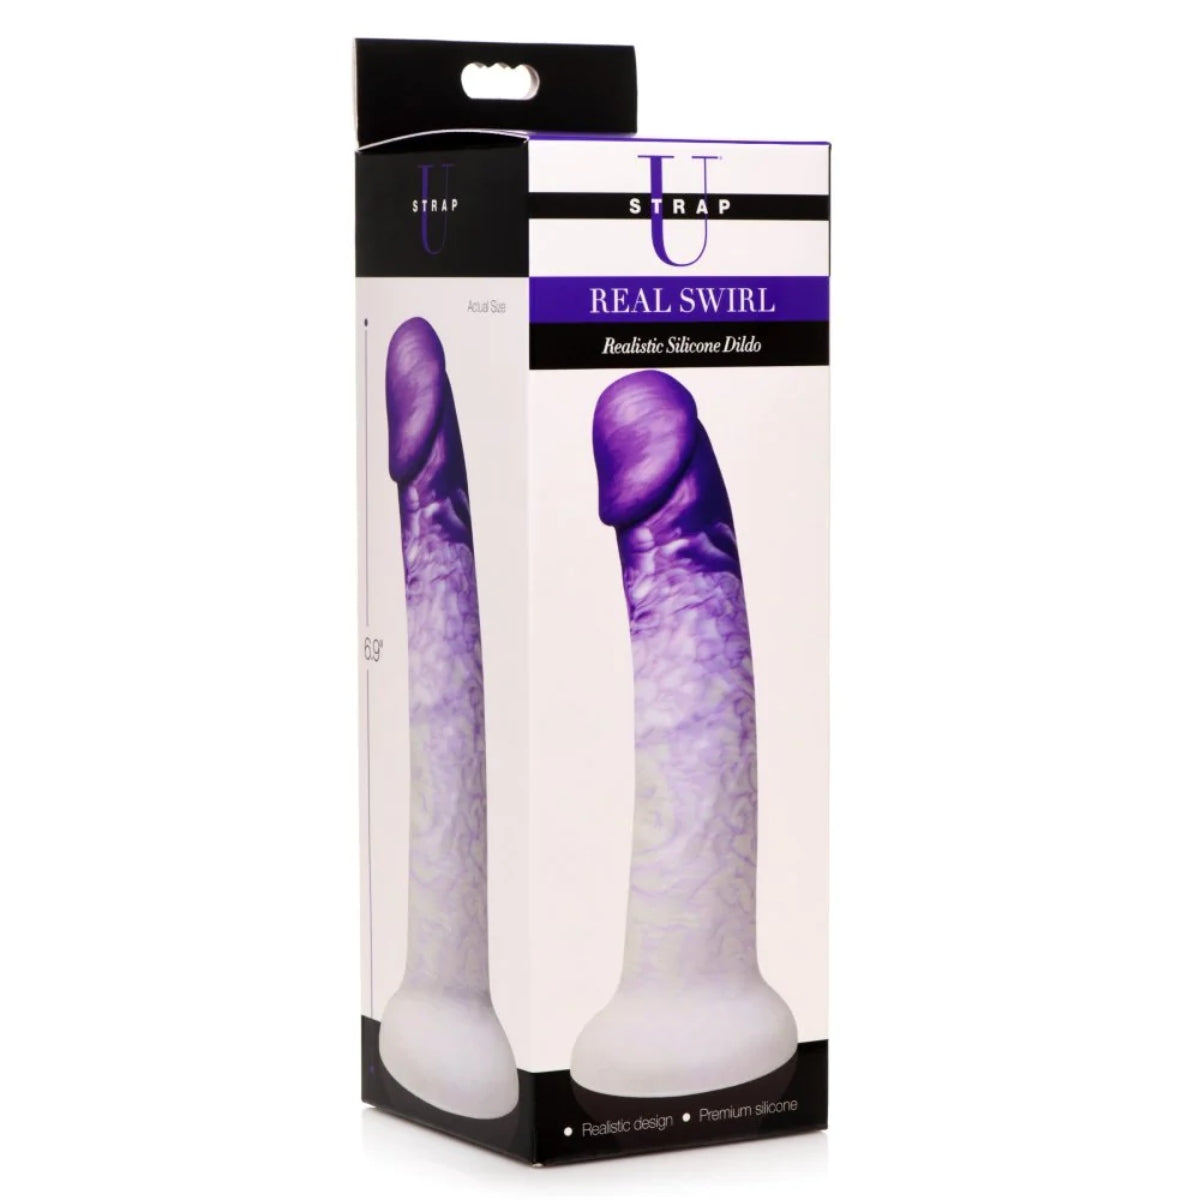 Strap U Real Swirl Realistic Silicone Dildo Purple White 6.9 Inch